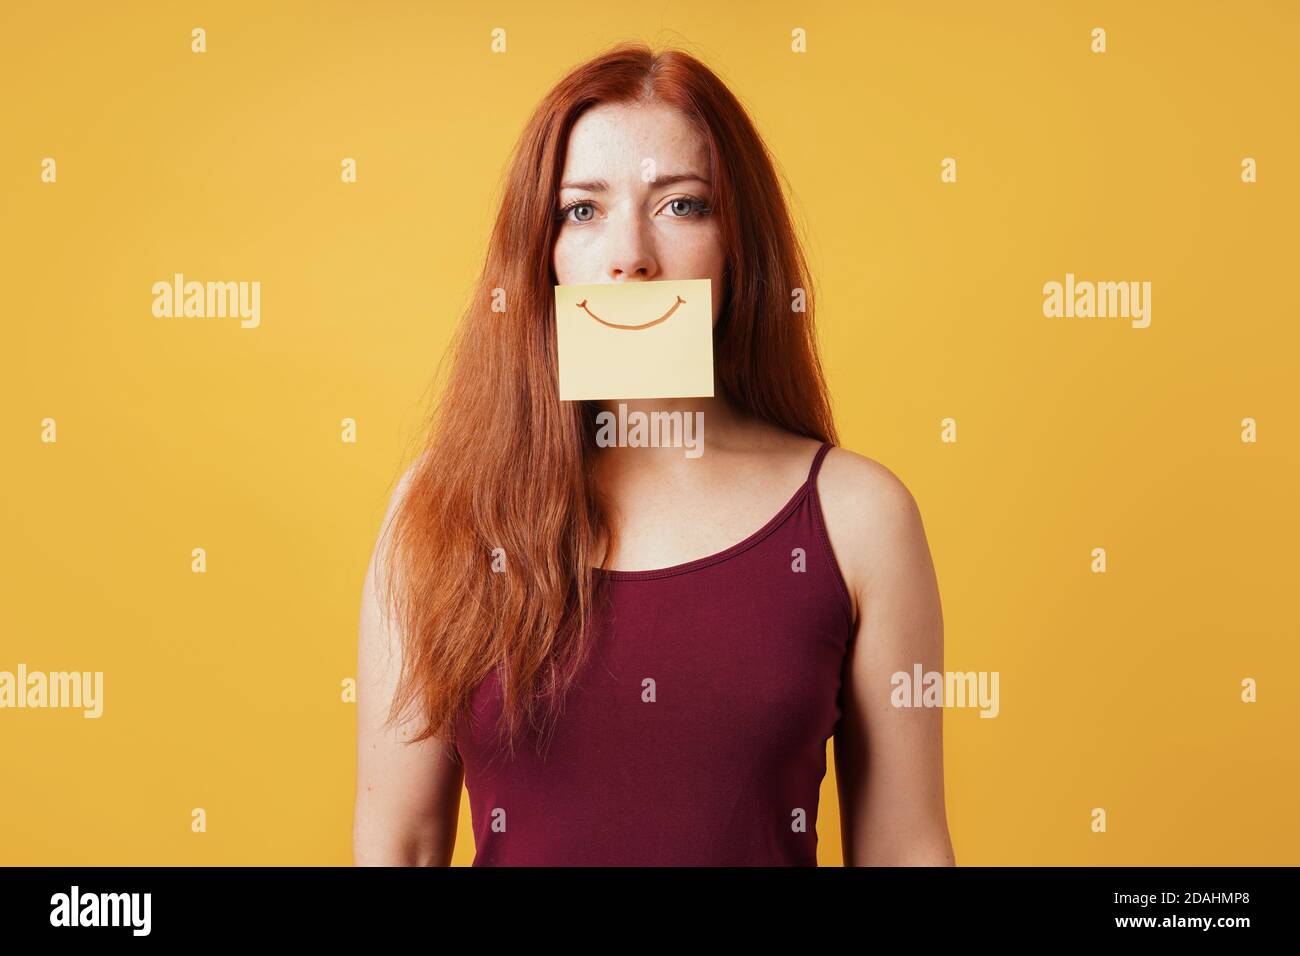 jeune femme cachant tristesse ou dépression derrière le faux sourire tiré sur papier note jaune Banque D'Images